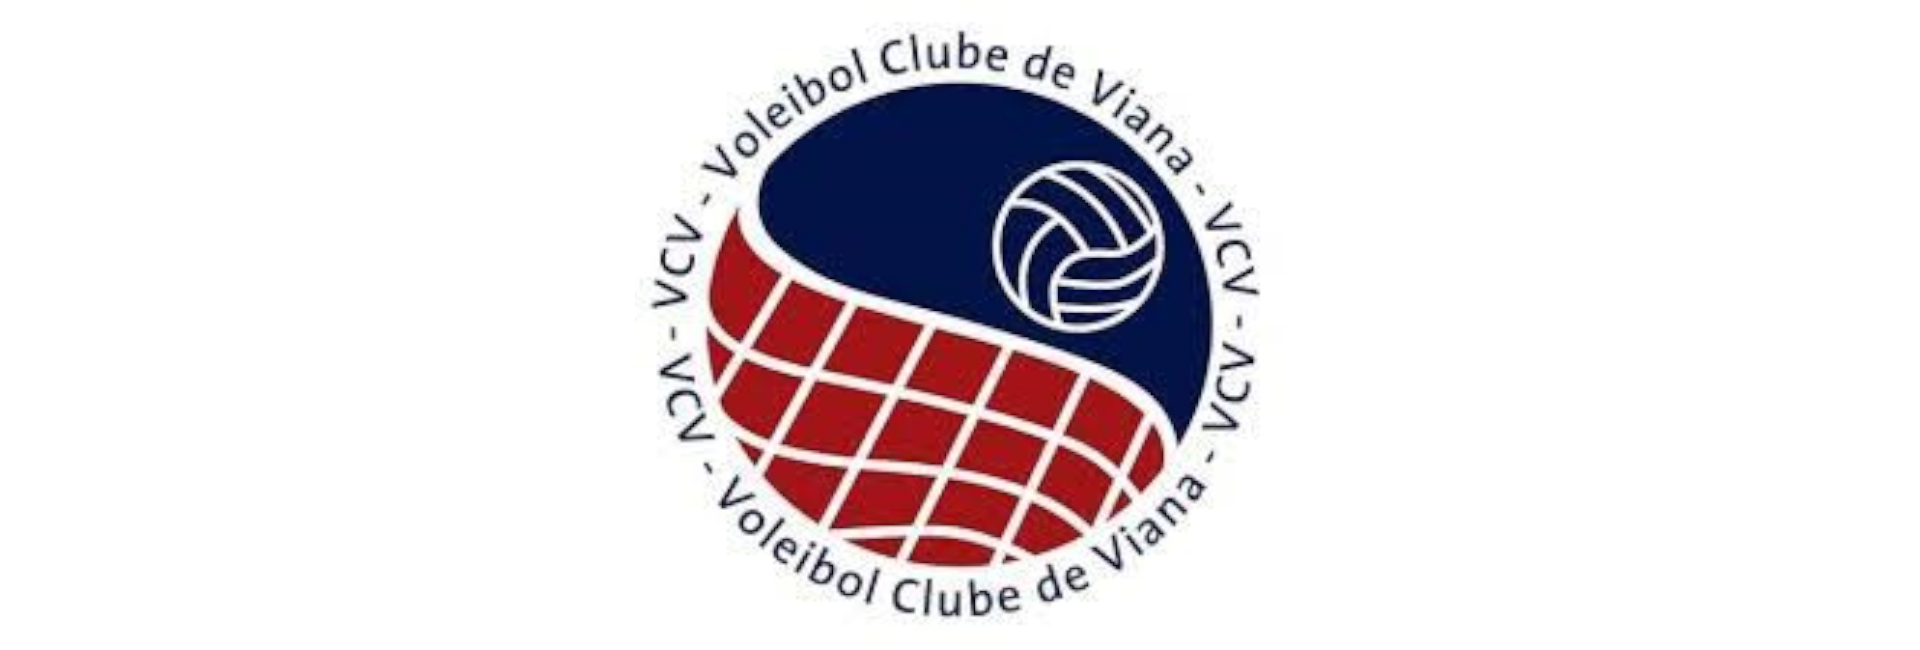 Campeonato Nacional de Seniores Masculinos Playoff Manutenção 1ª/2ª Divisão